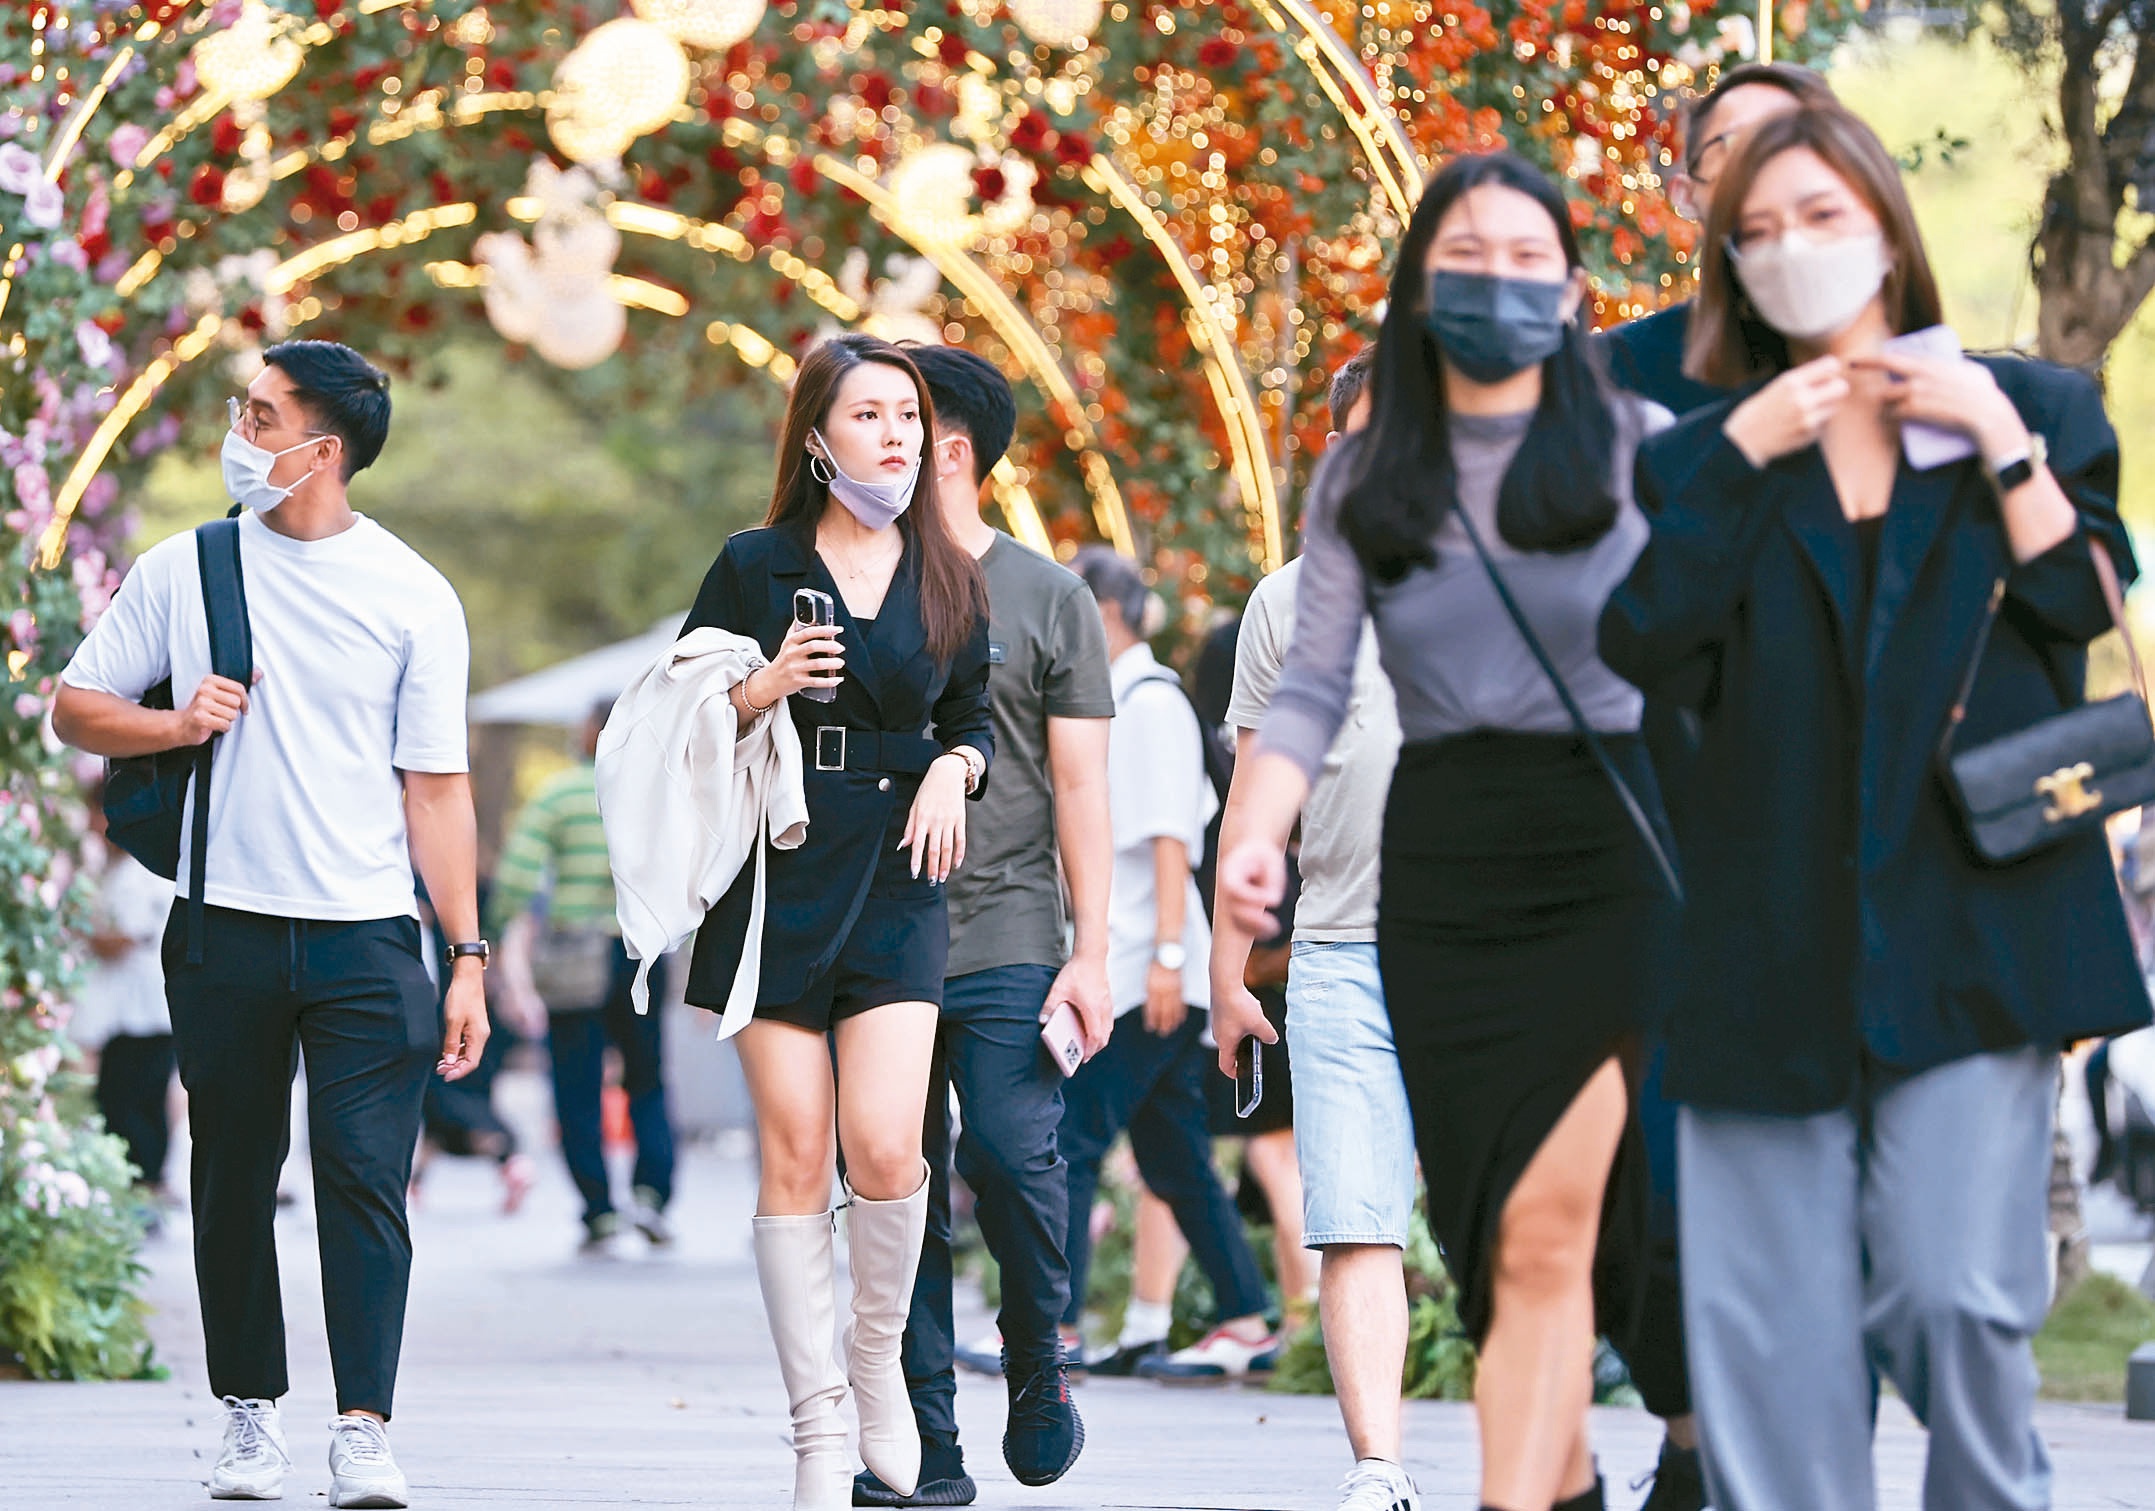 指挥中心宣布12月1日起，取消室外全程戴口罩规定，究竟要不要脱掉口罩引发民众讨论。记者侯永全／摄影